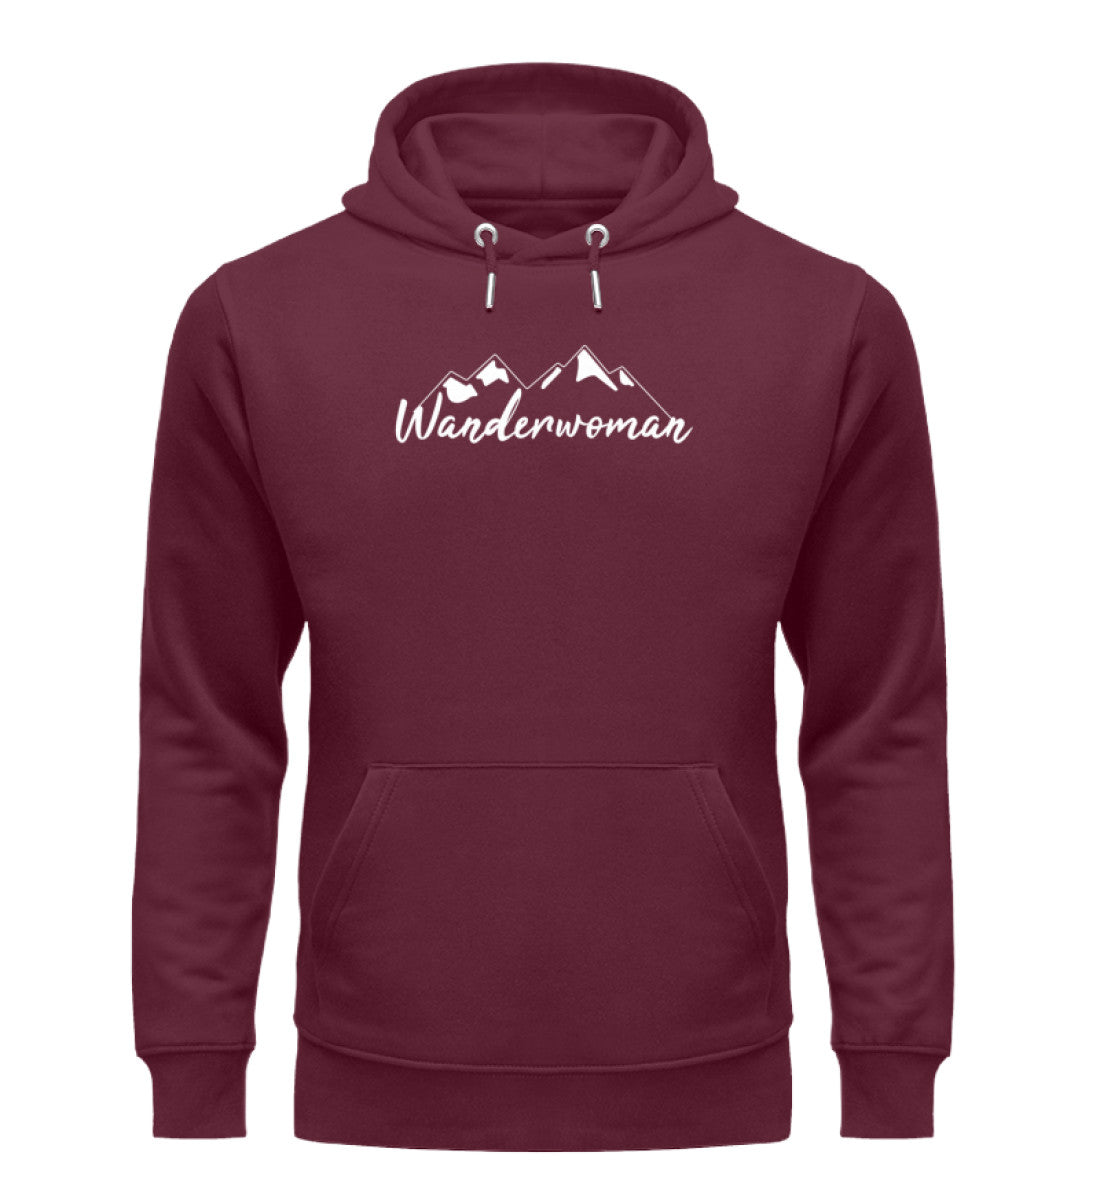 Wanderwoman. - Unisex Premium Organic Hoodie Weinrot